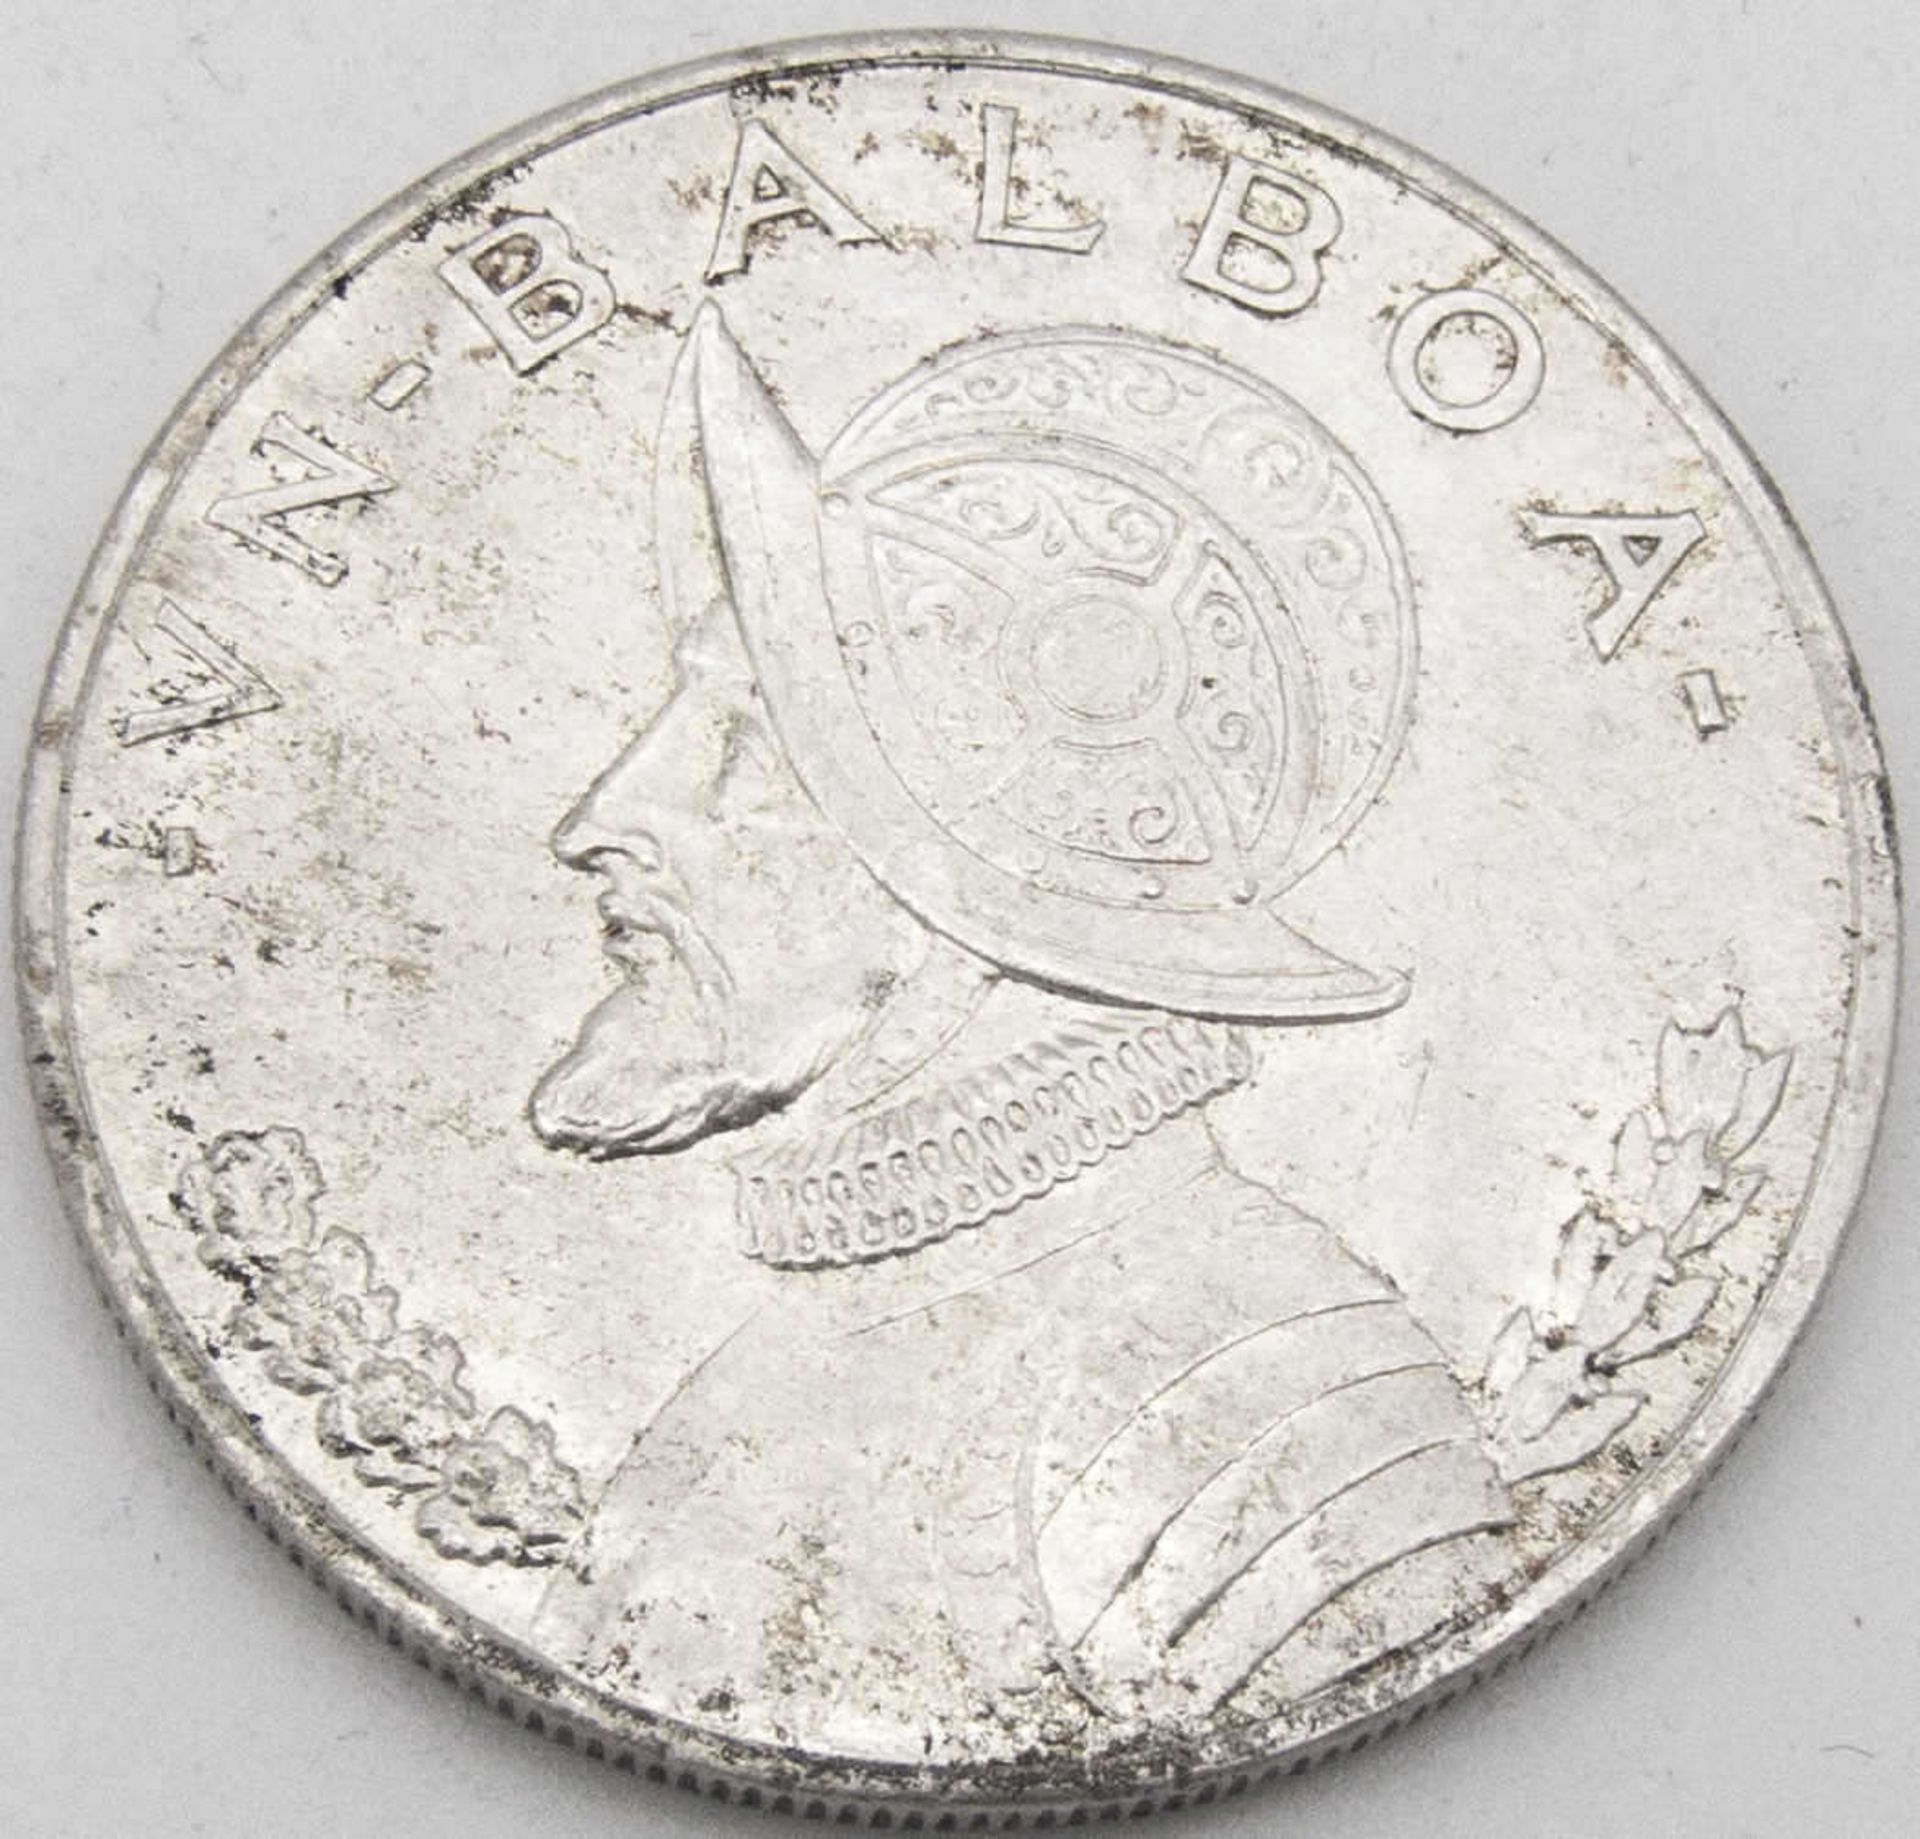 Panama 1947, 1 Balboa - Silbermünze. Erhaltung: vz.Panama 1947, 1 Balboa - silver coin. Condition: